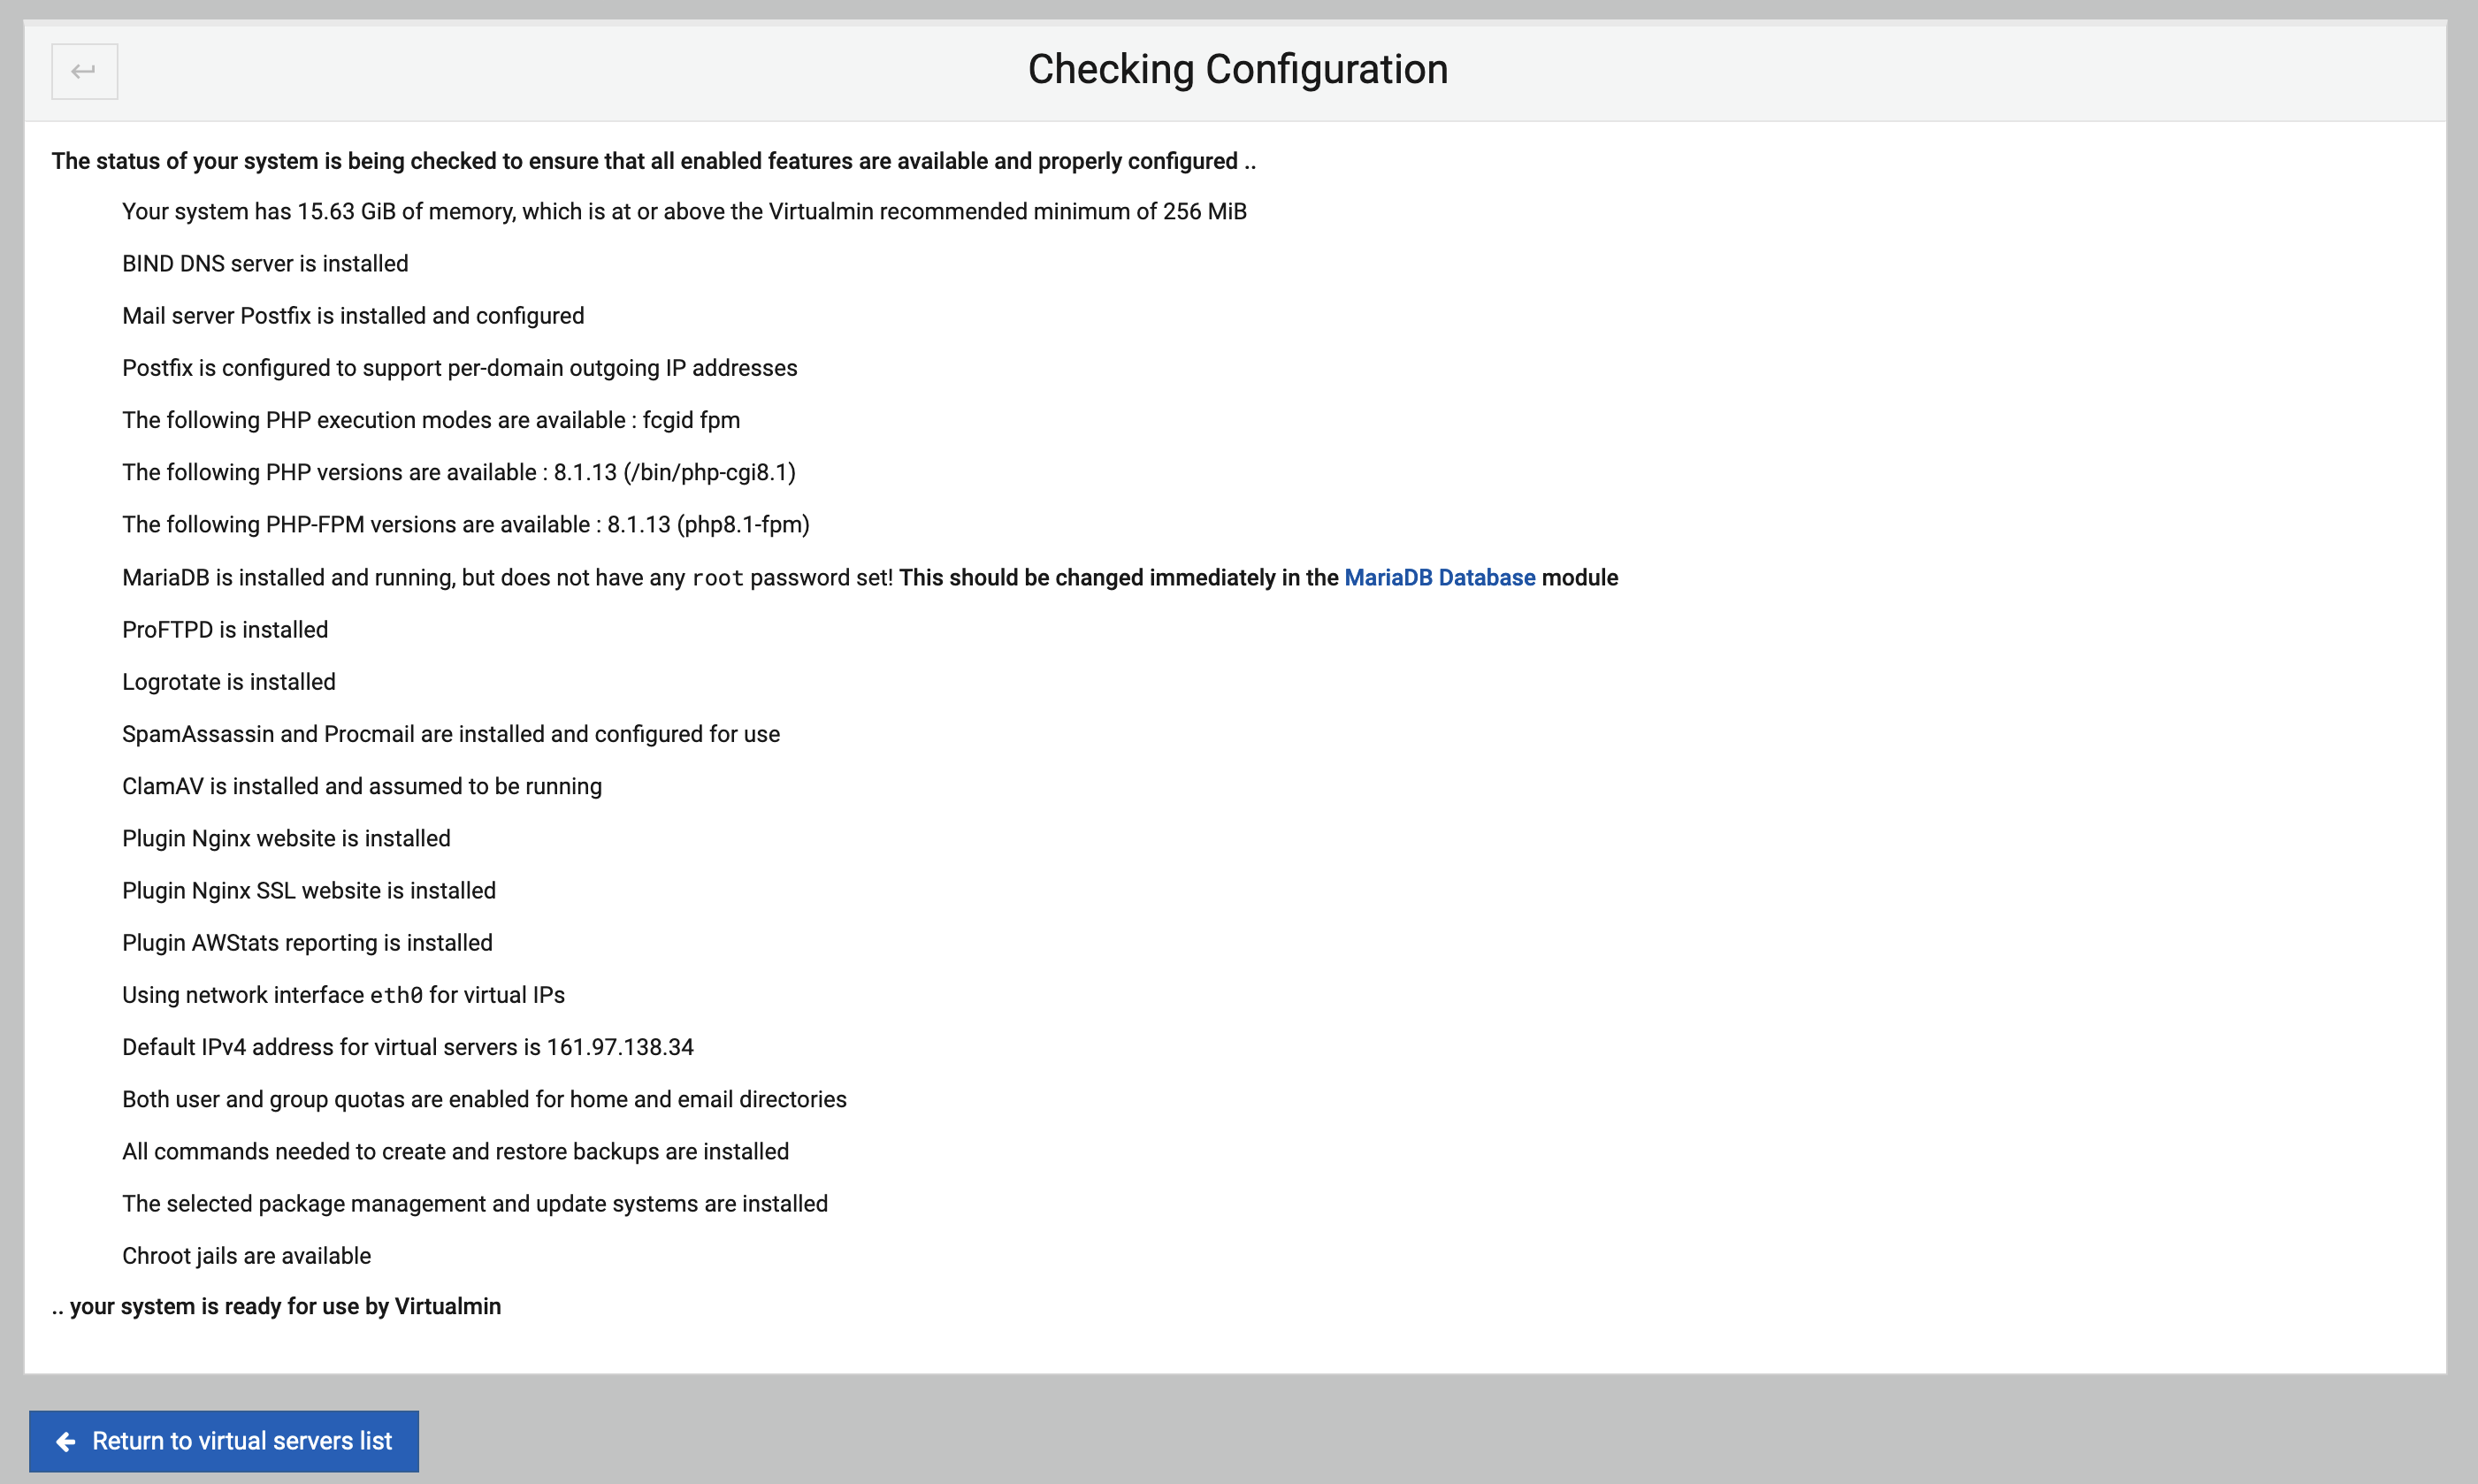 Re-Check Configuration